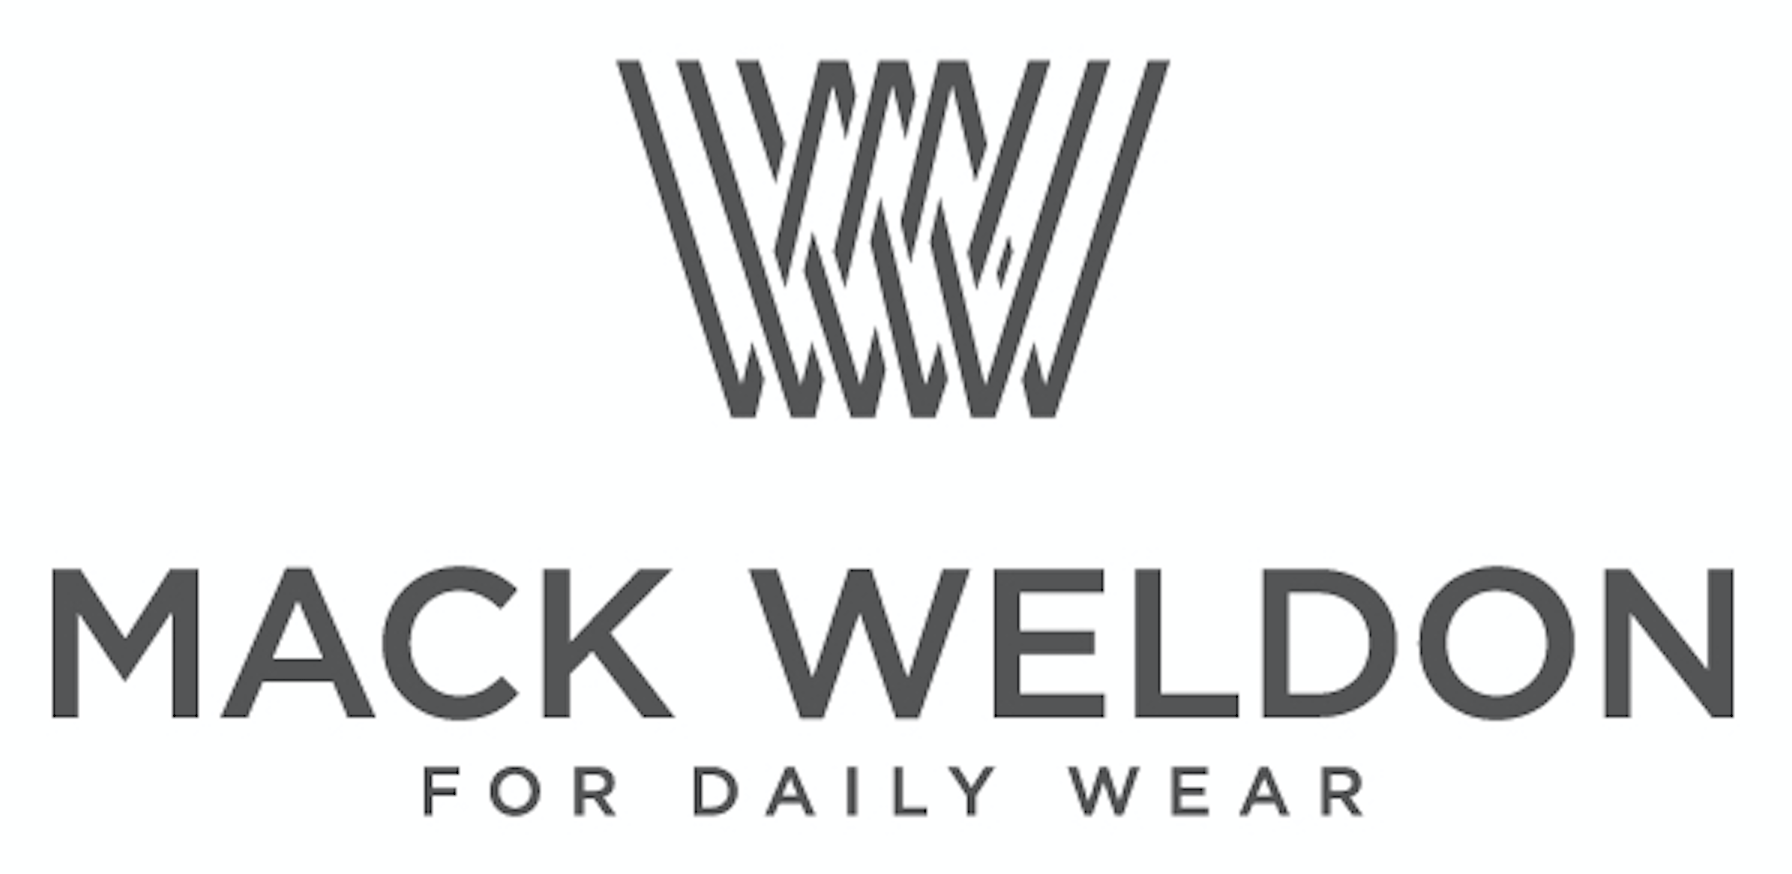 Weldon Logo - mack weldon logo - Après